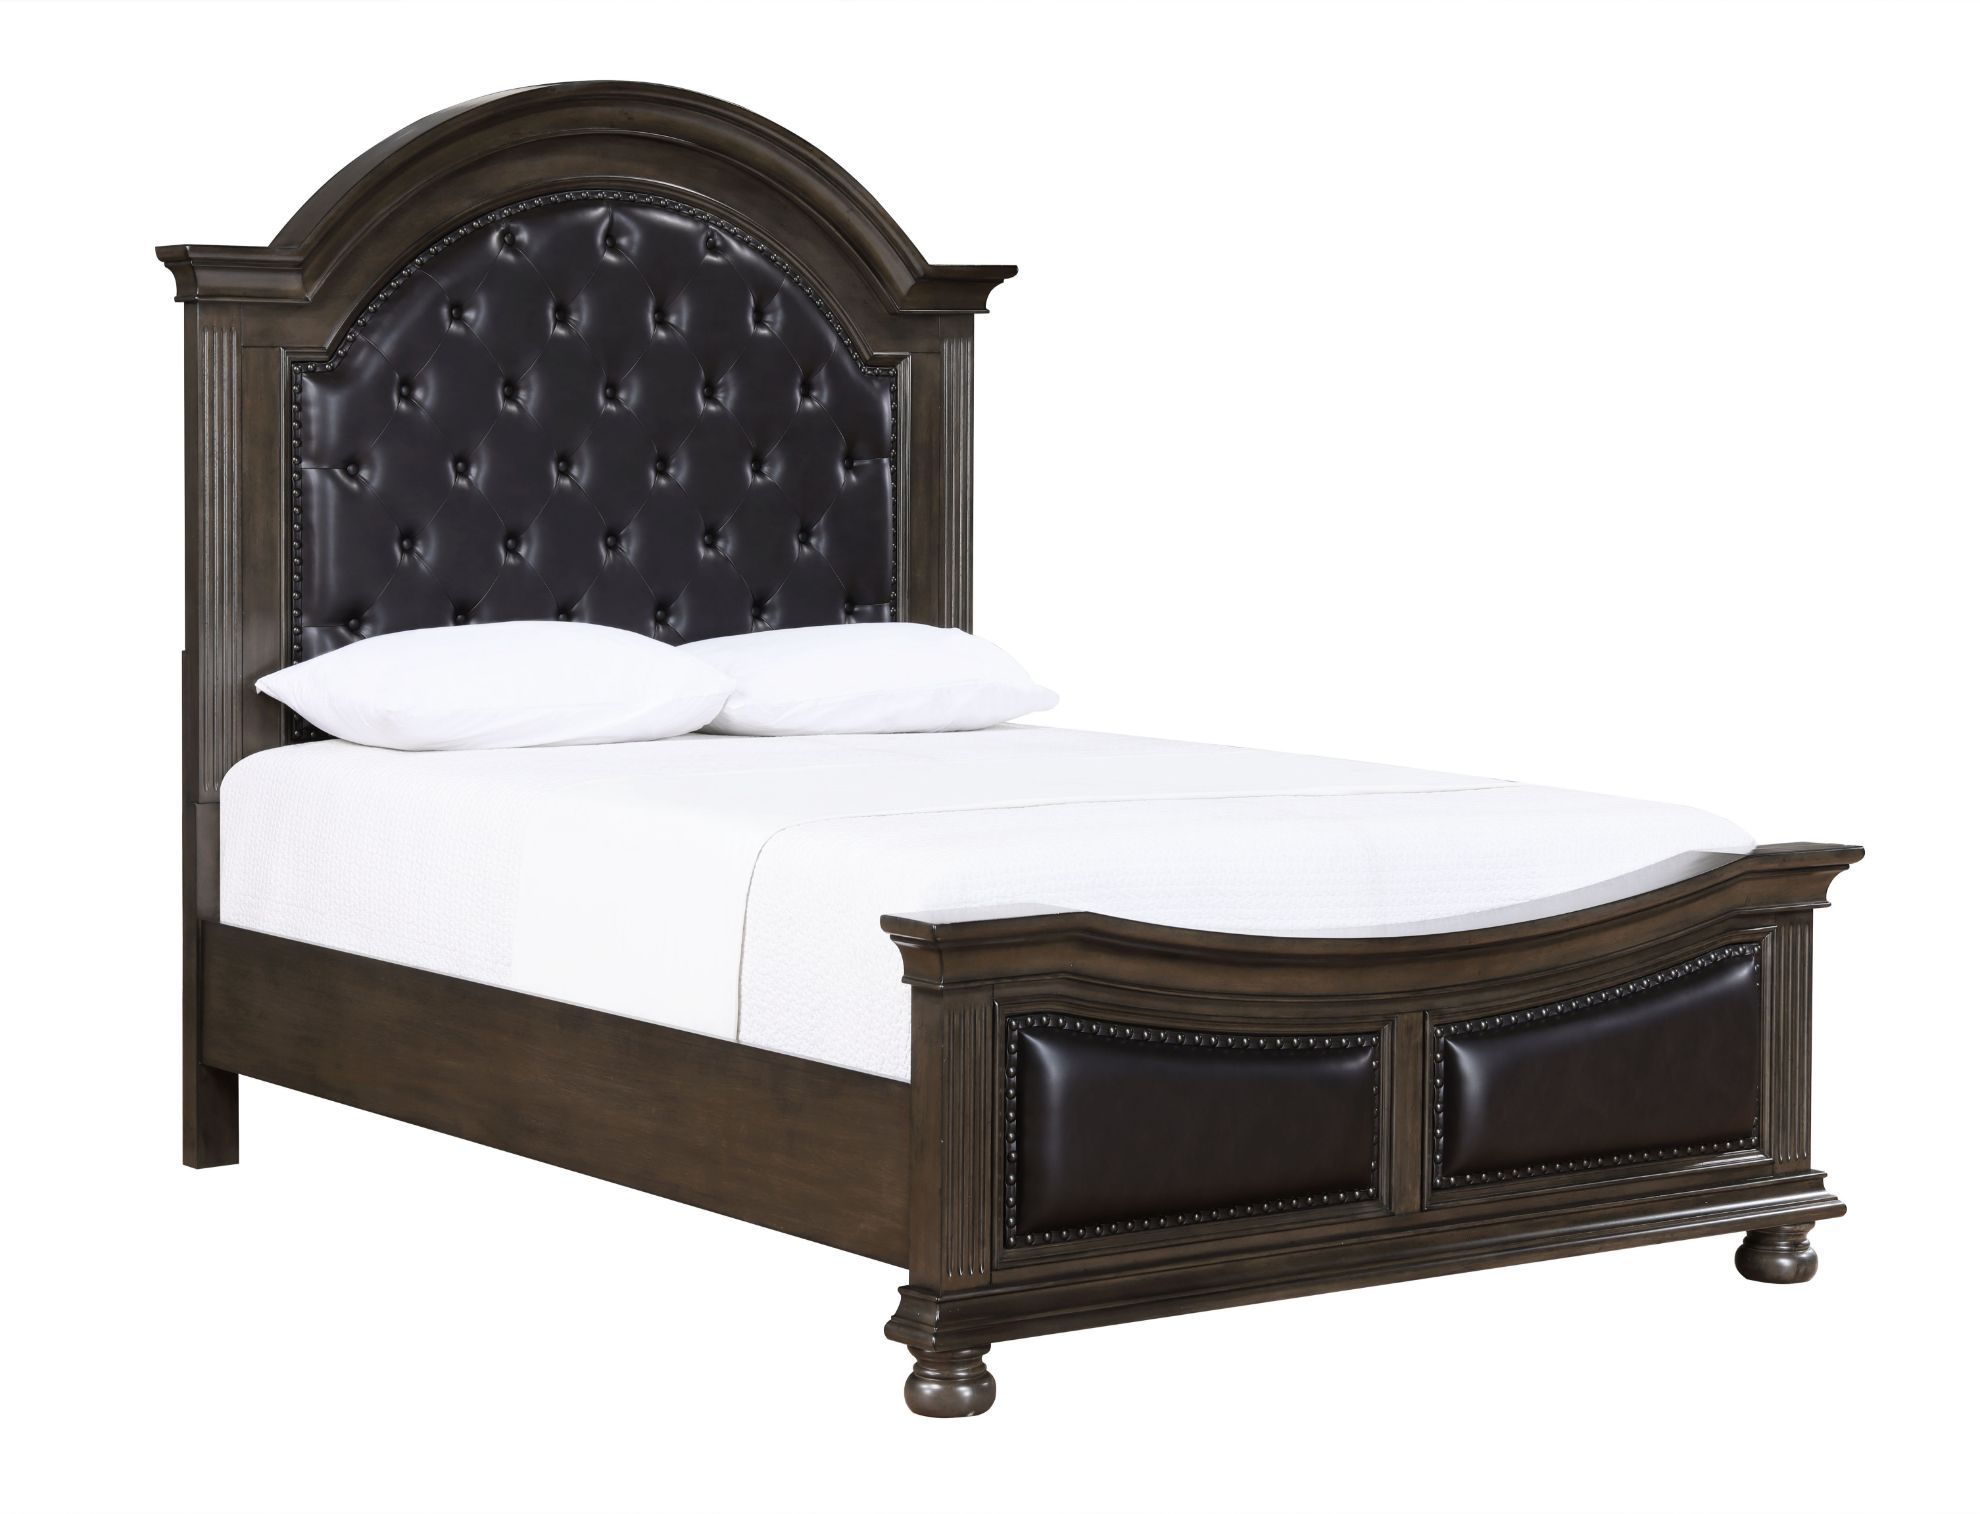 Balboa Queen Bed